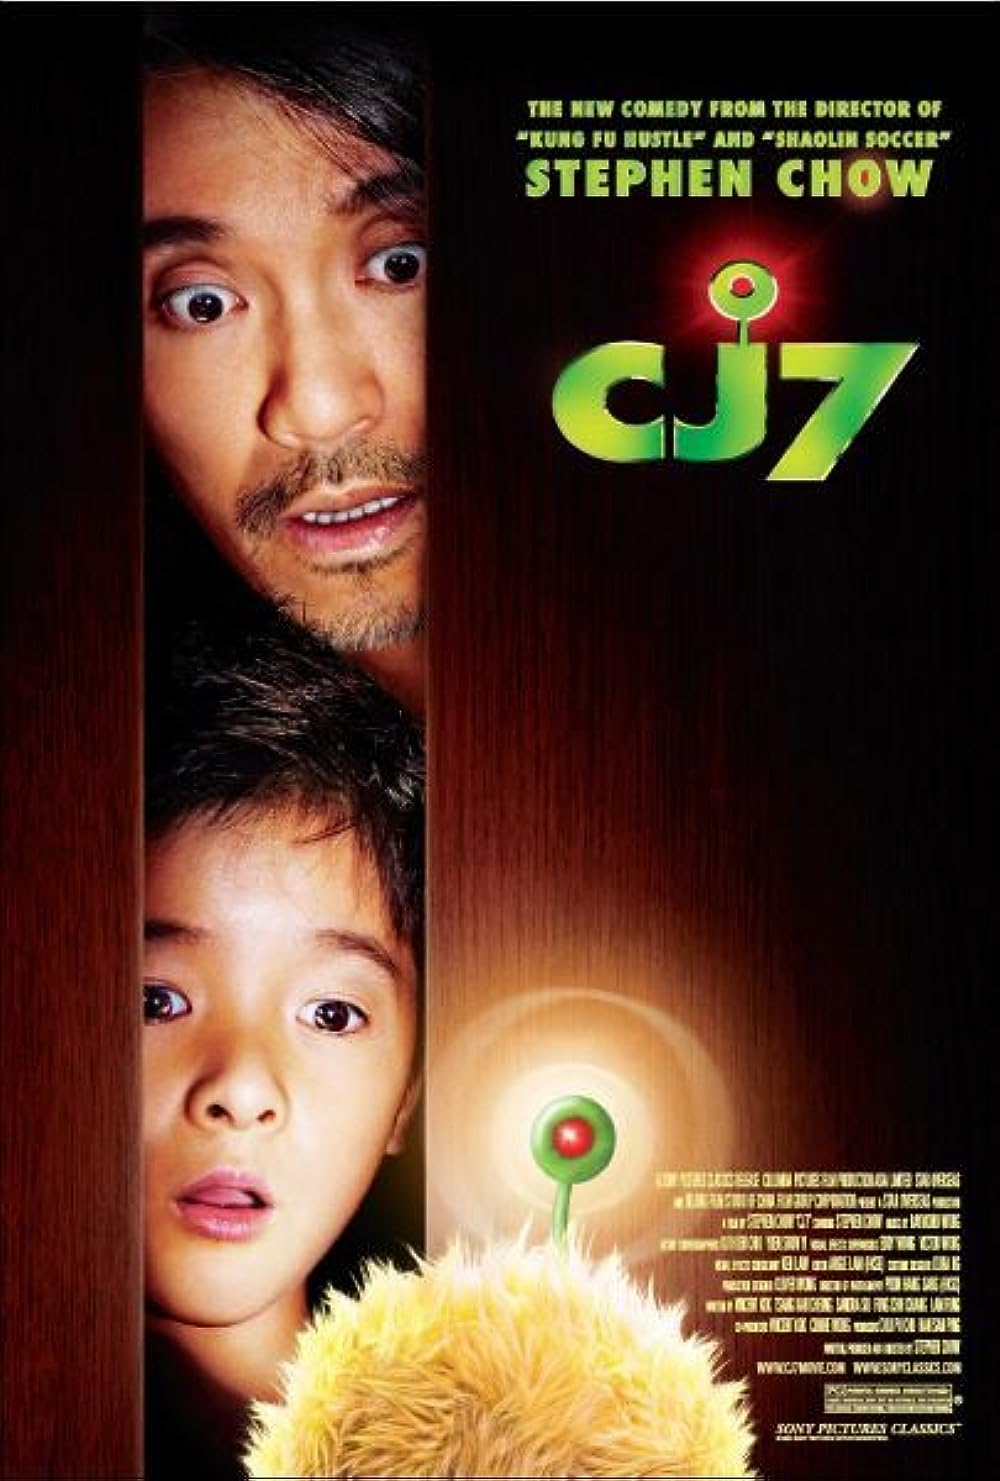 โจวซิงฉือ ซูเจียว ลูกชายในหนัง CJ7